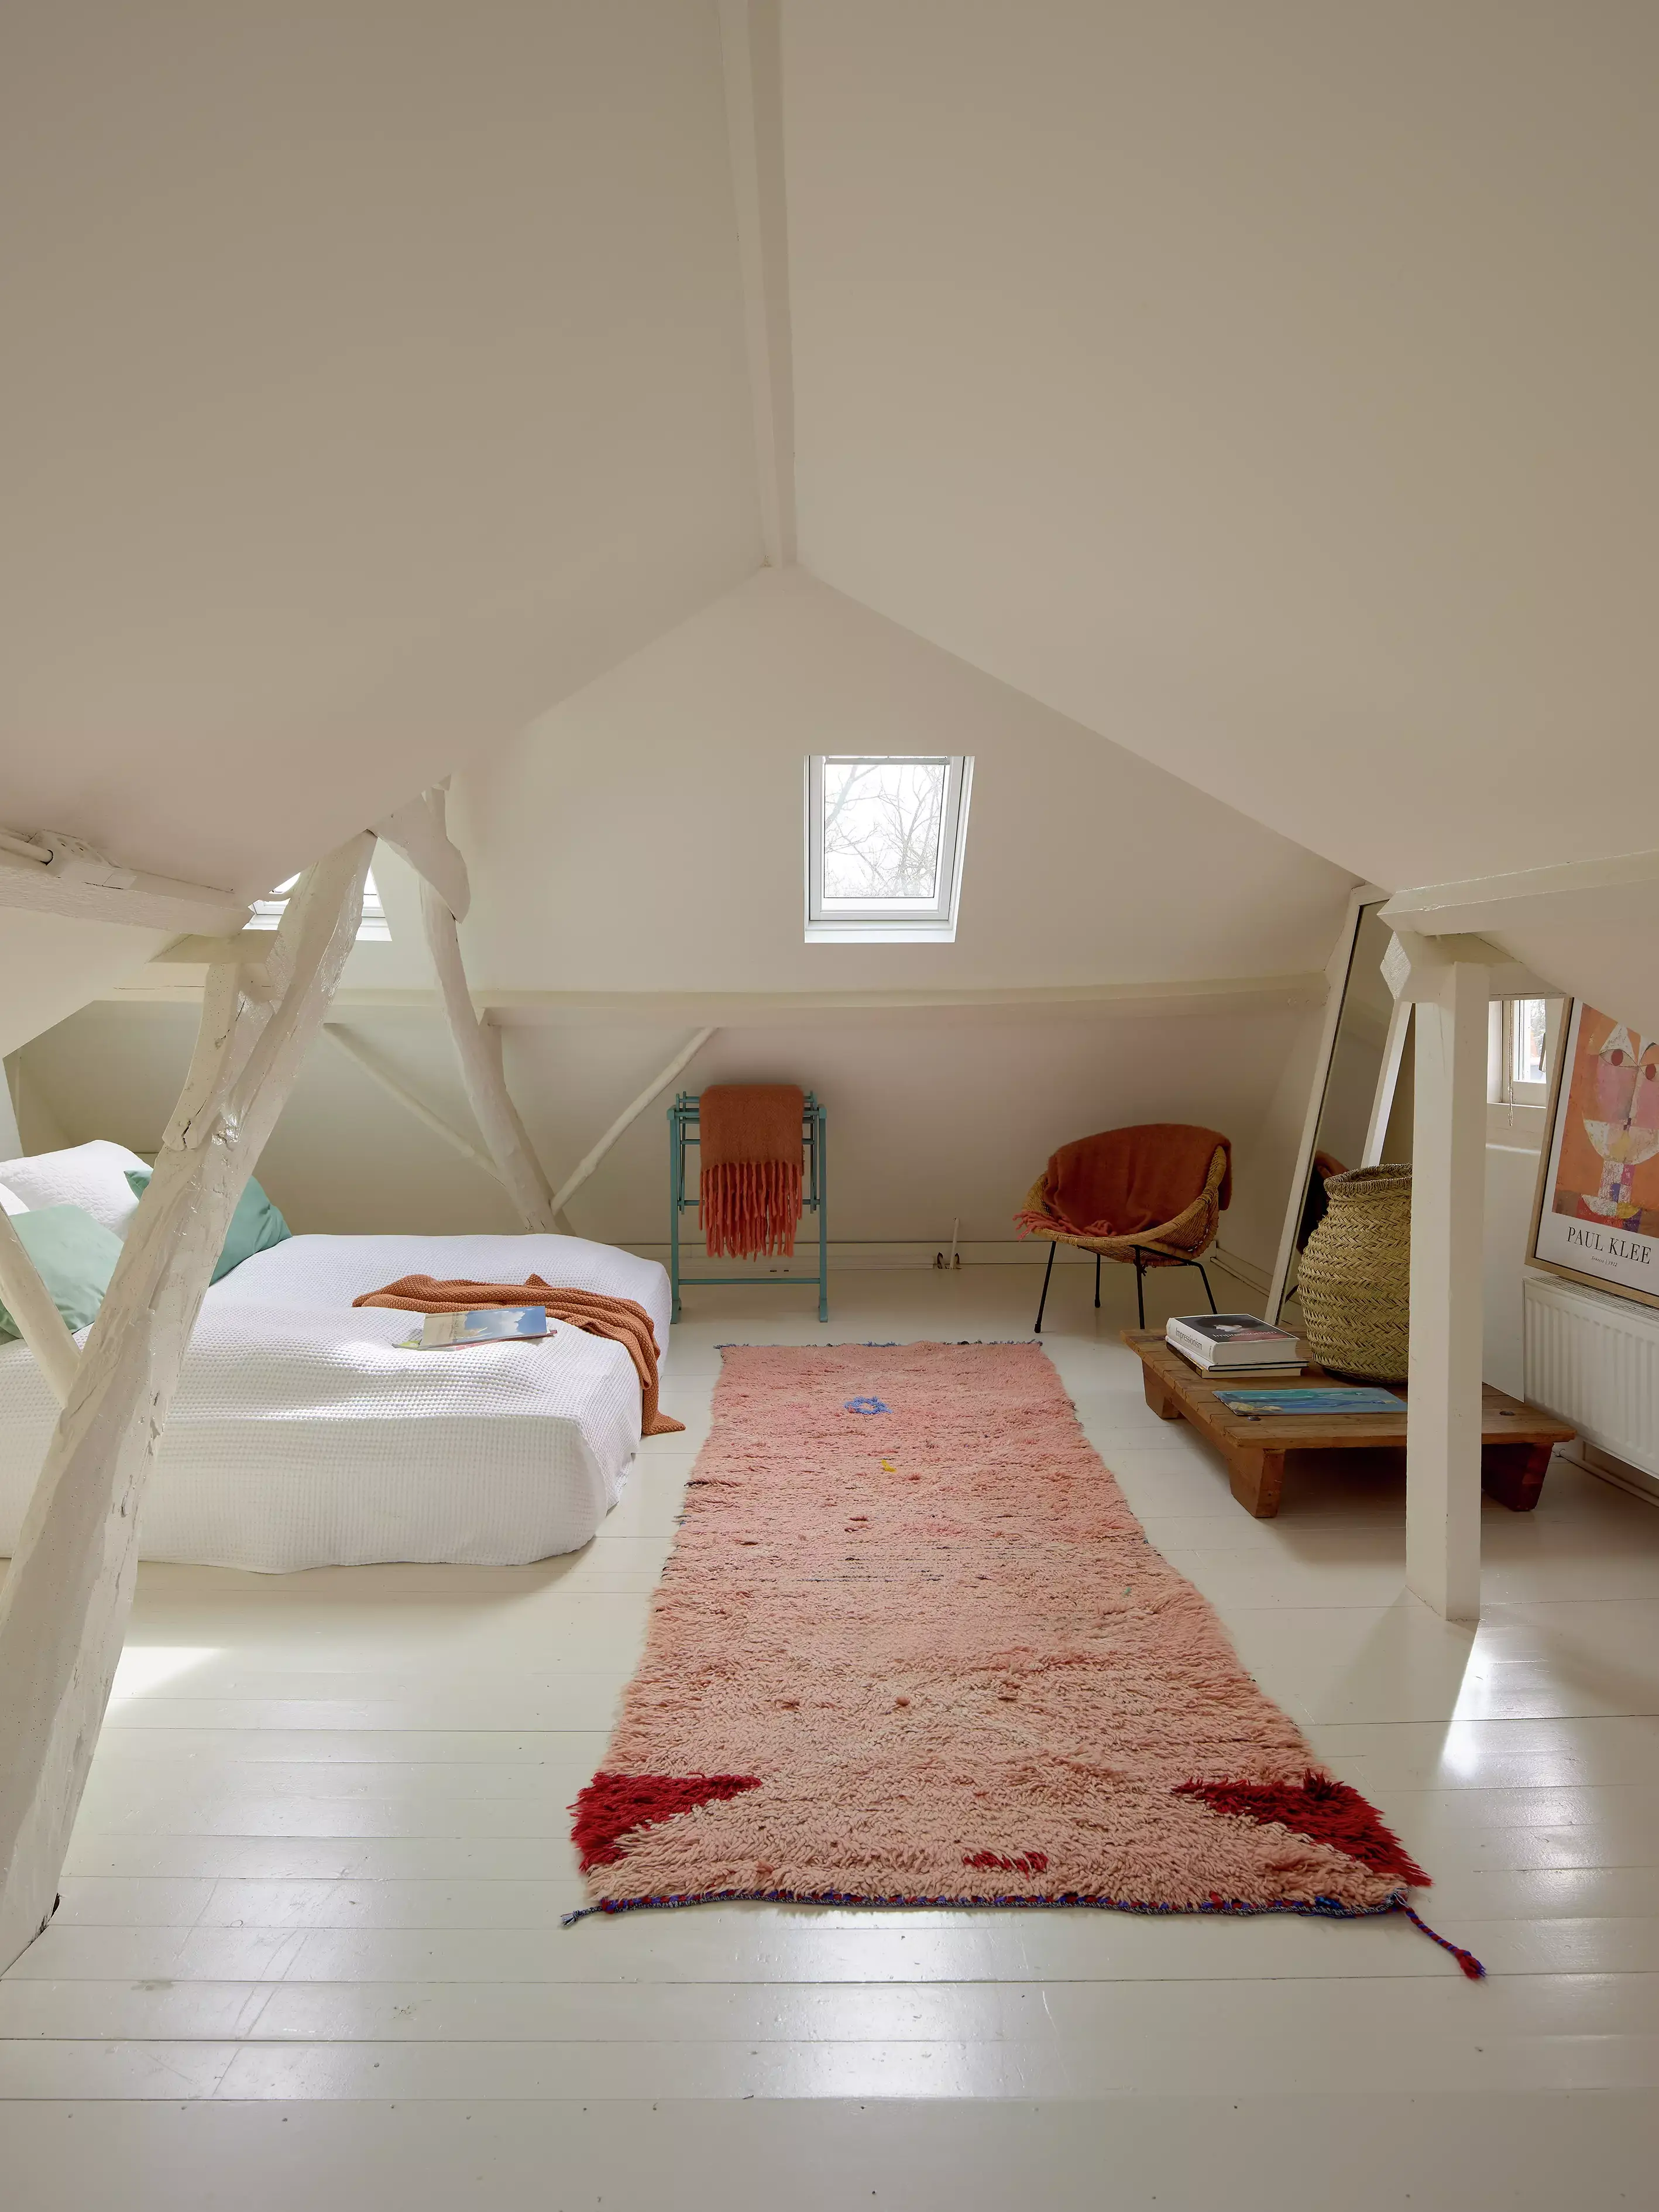 Chambre mansardée confortable avec lumière naturelle provenant d'une fenêtre de toit VELUX, tapis moelleux et coin lecture.